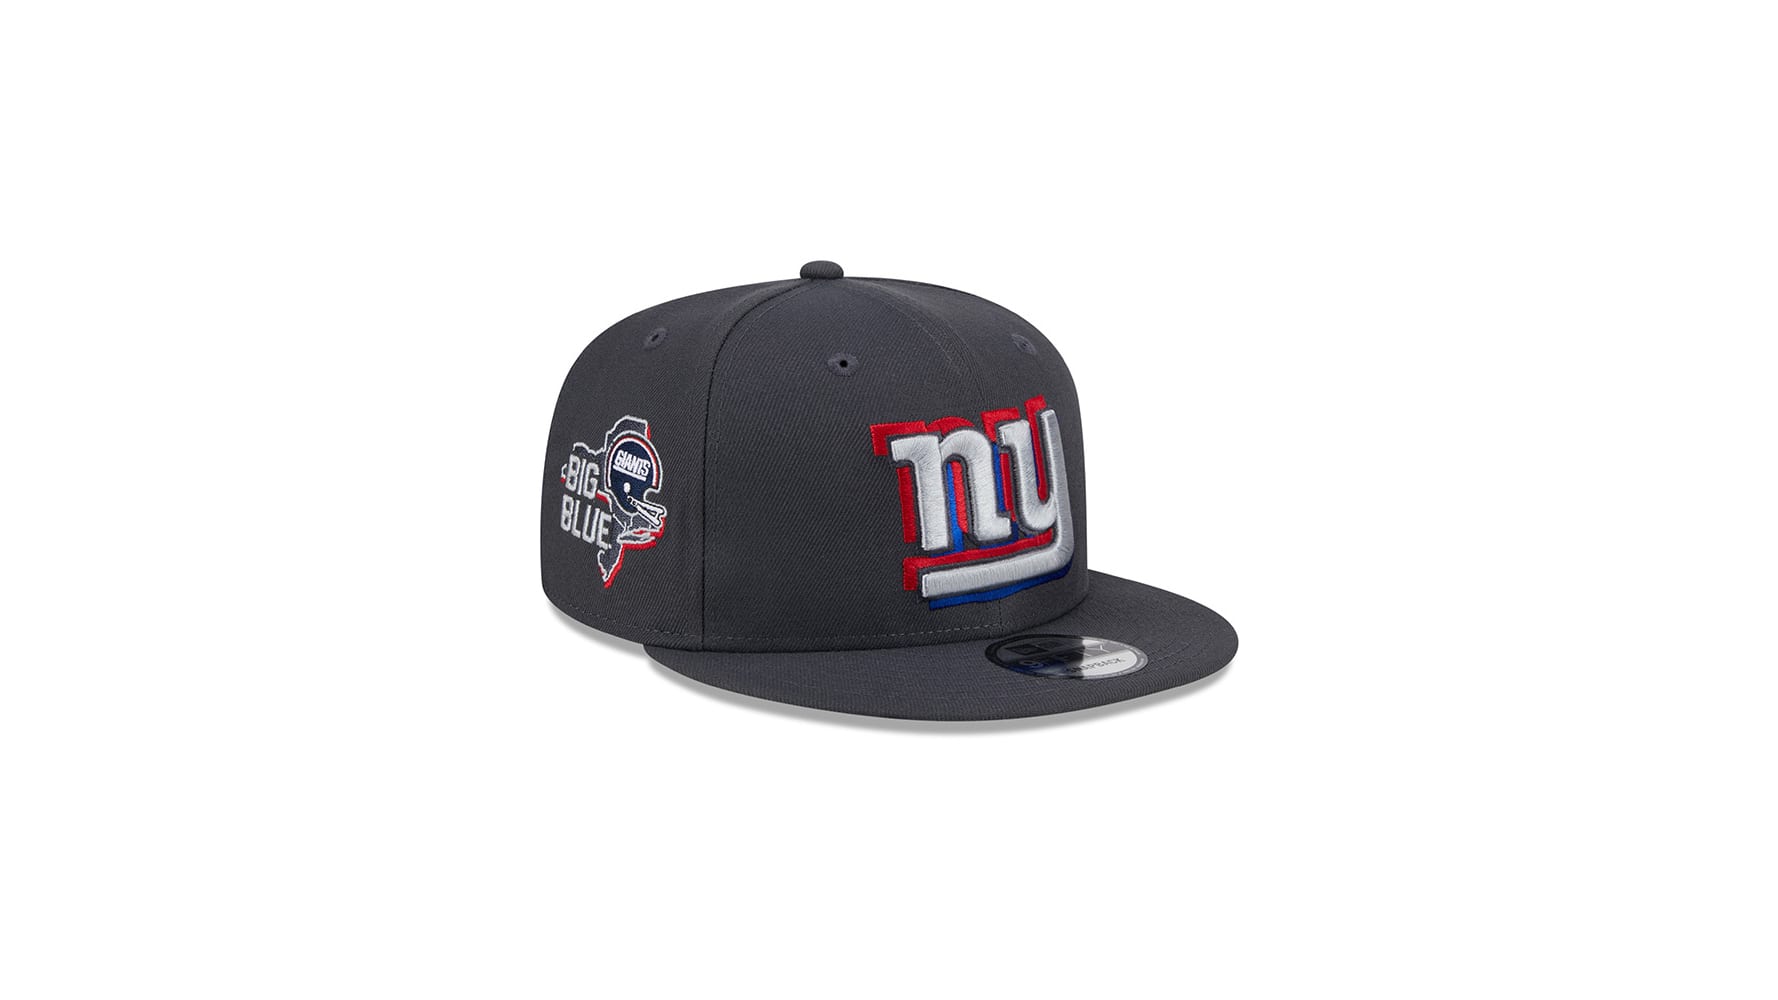 New York Giants Hats  Giants Caps, NY Snapbacks, Truckers, Beanies